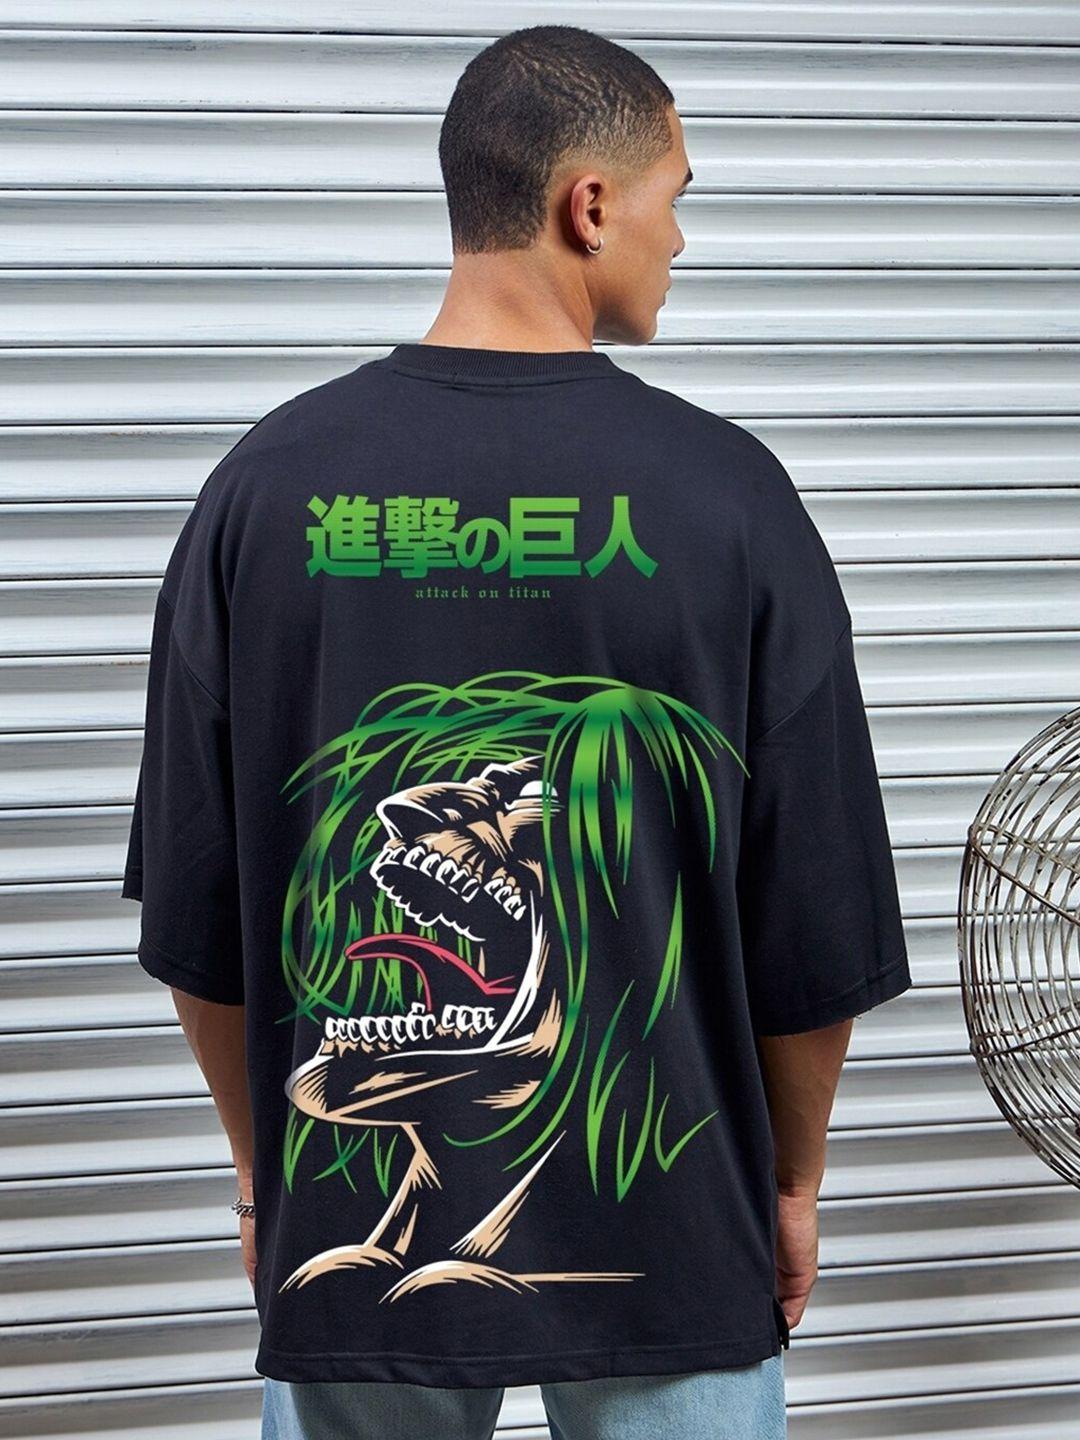 bewakoof heavy duty 1.0 kyogin graphic printed oversized zipper t-shirt